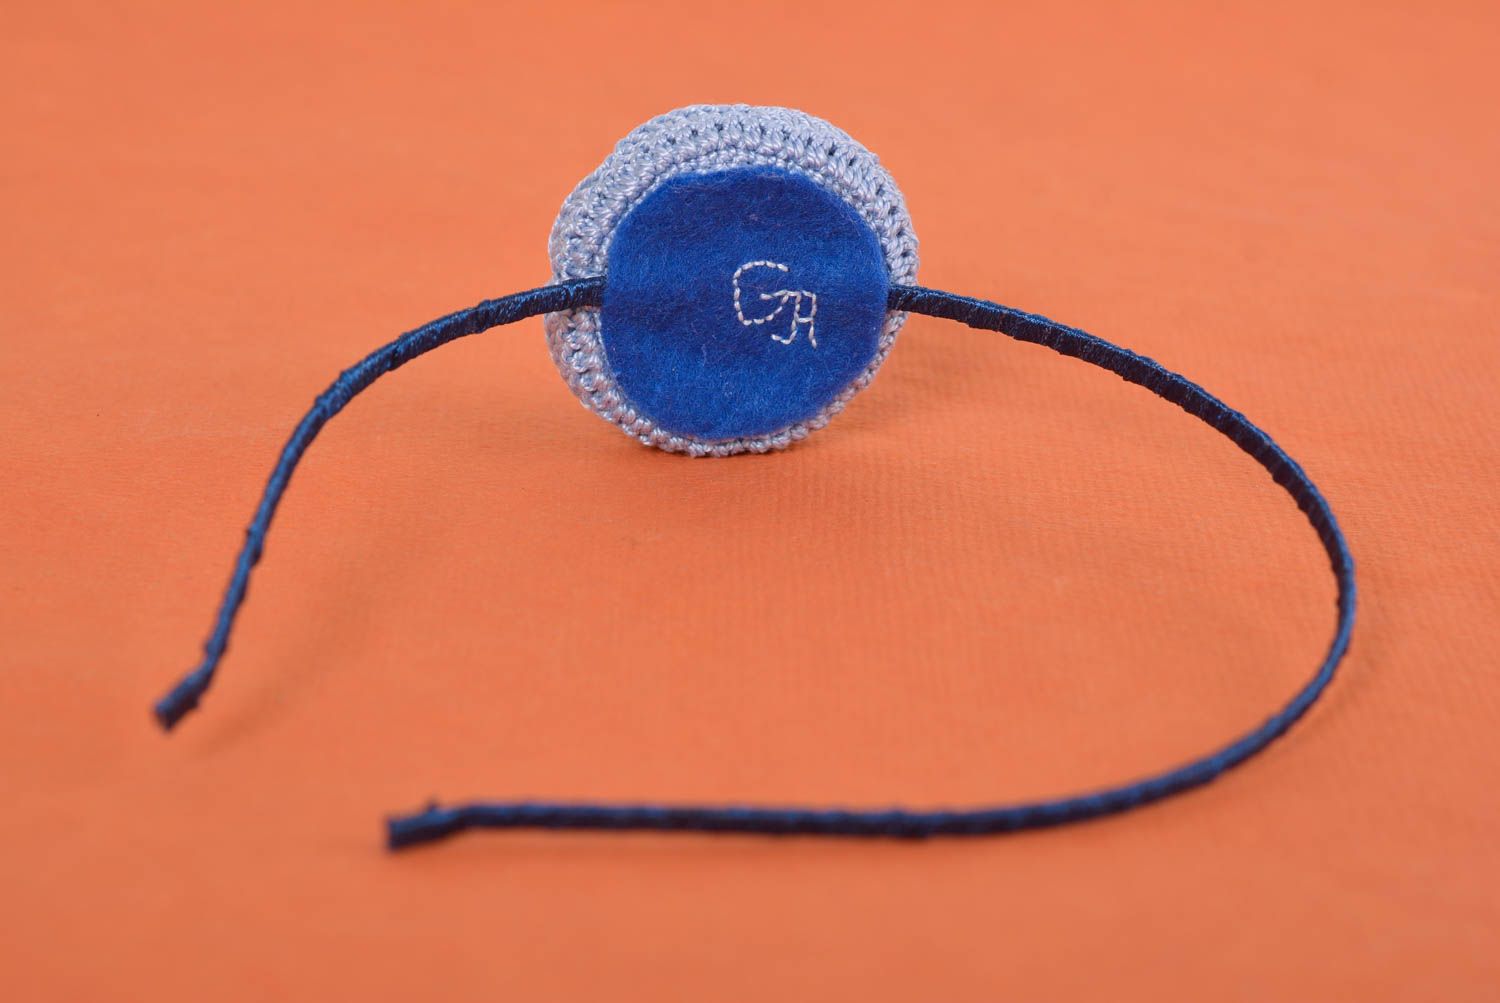 Аксессуар для волос handmade обруч на голову женский аксессуар с синим цветком фото 5